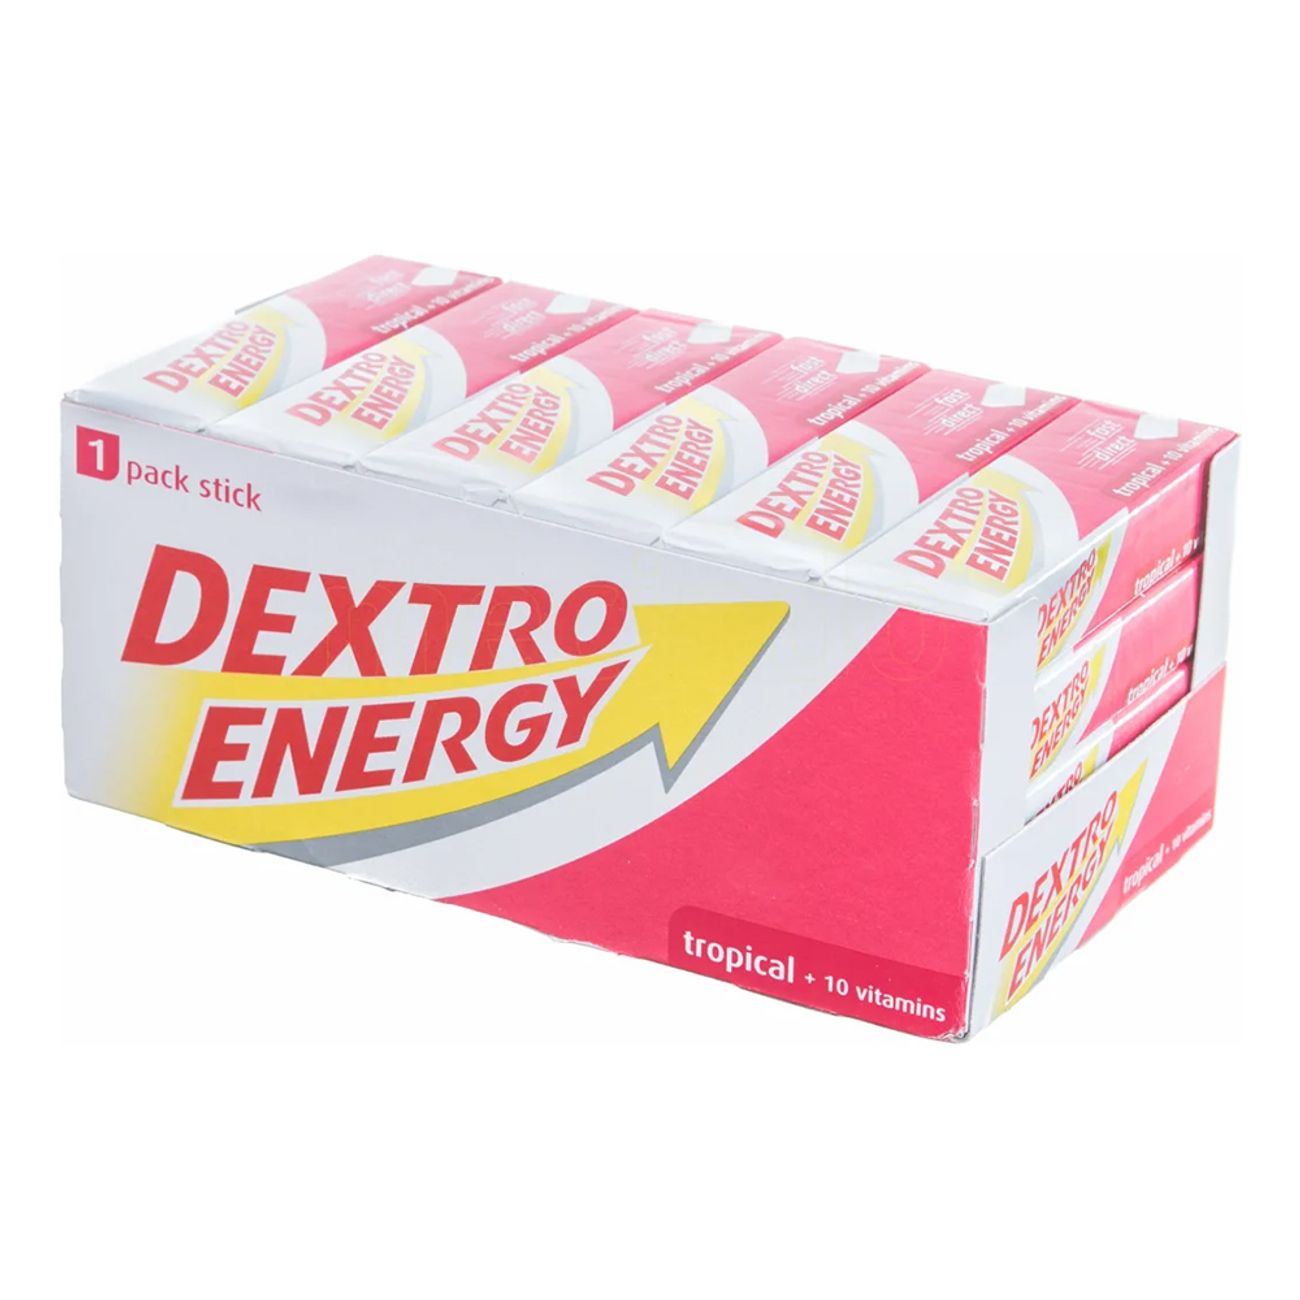 dextro-energy-tropical-43341-2